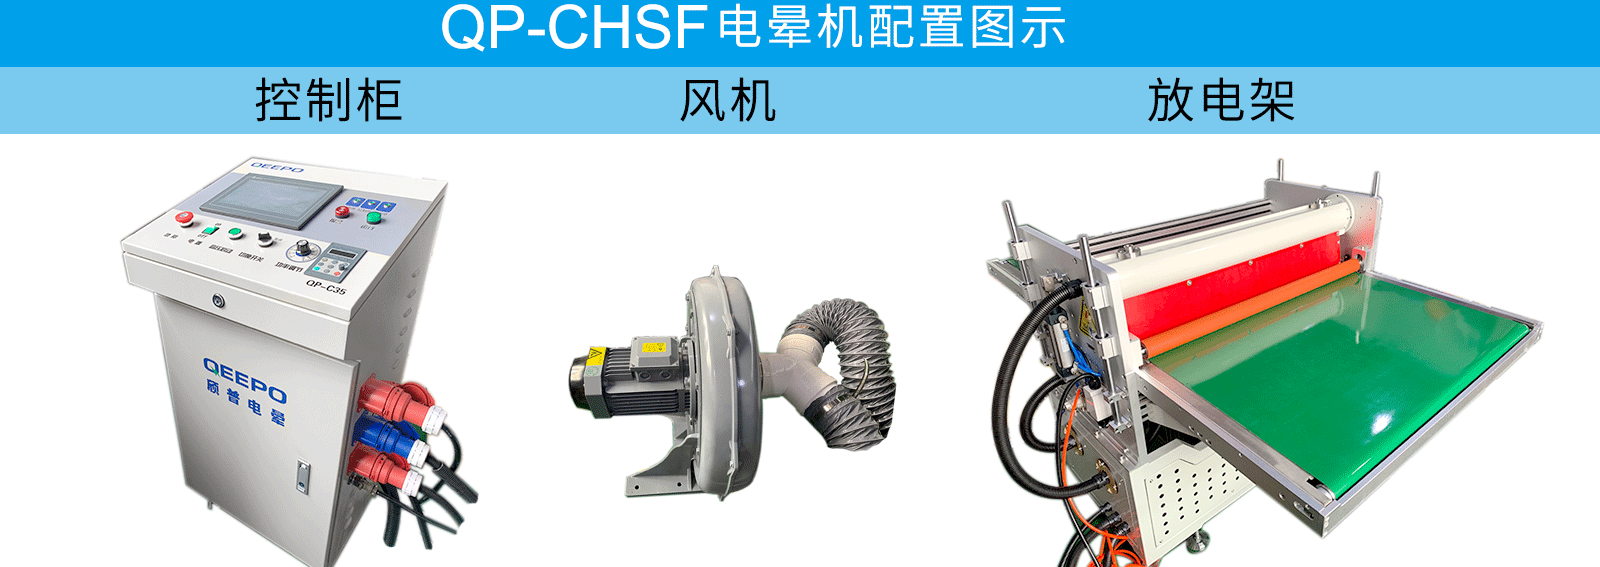 QP-CHSF电晕机配置图.png